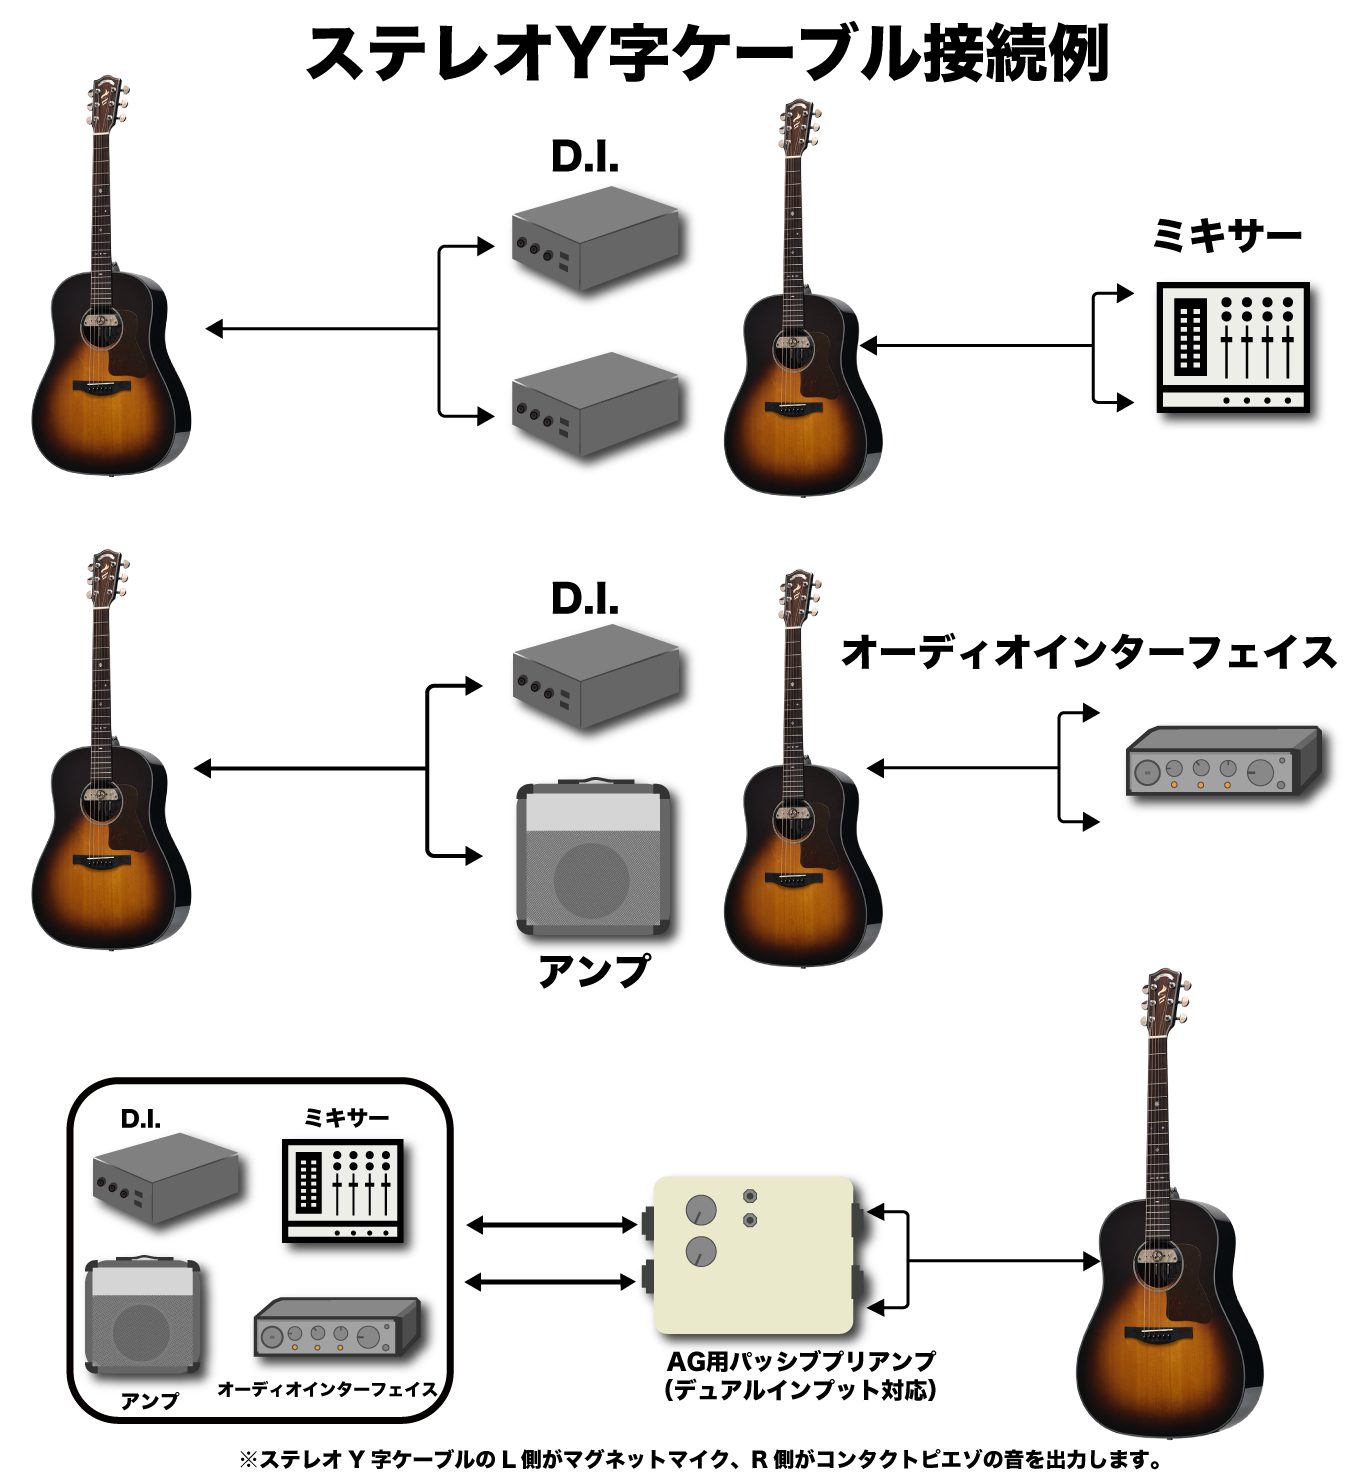 おさむらいさんシグネチャーピックアップ | Deviser ｜株式会社ディバイザー｜長野県松本市のギターメーカー